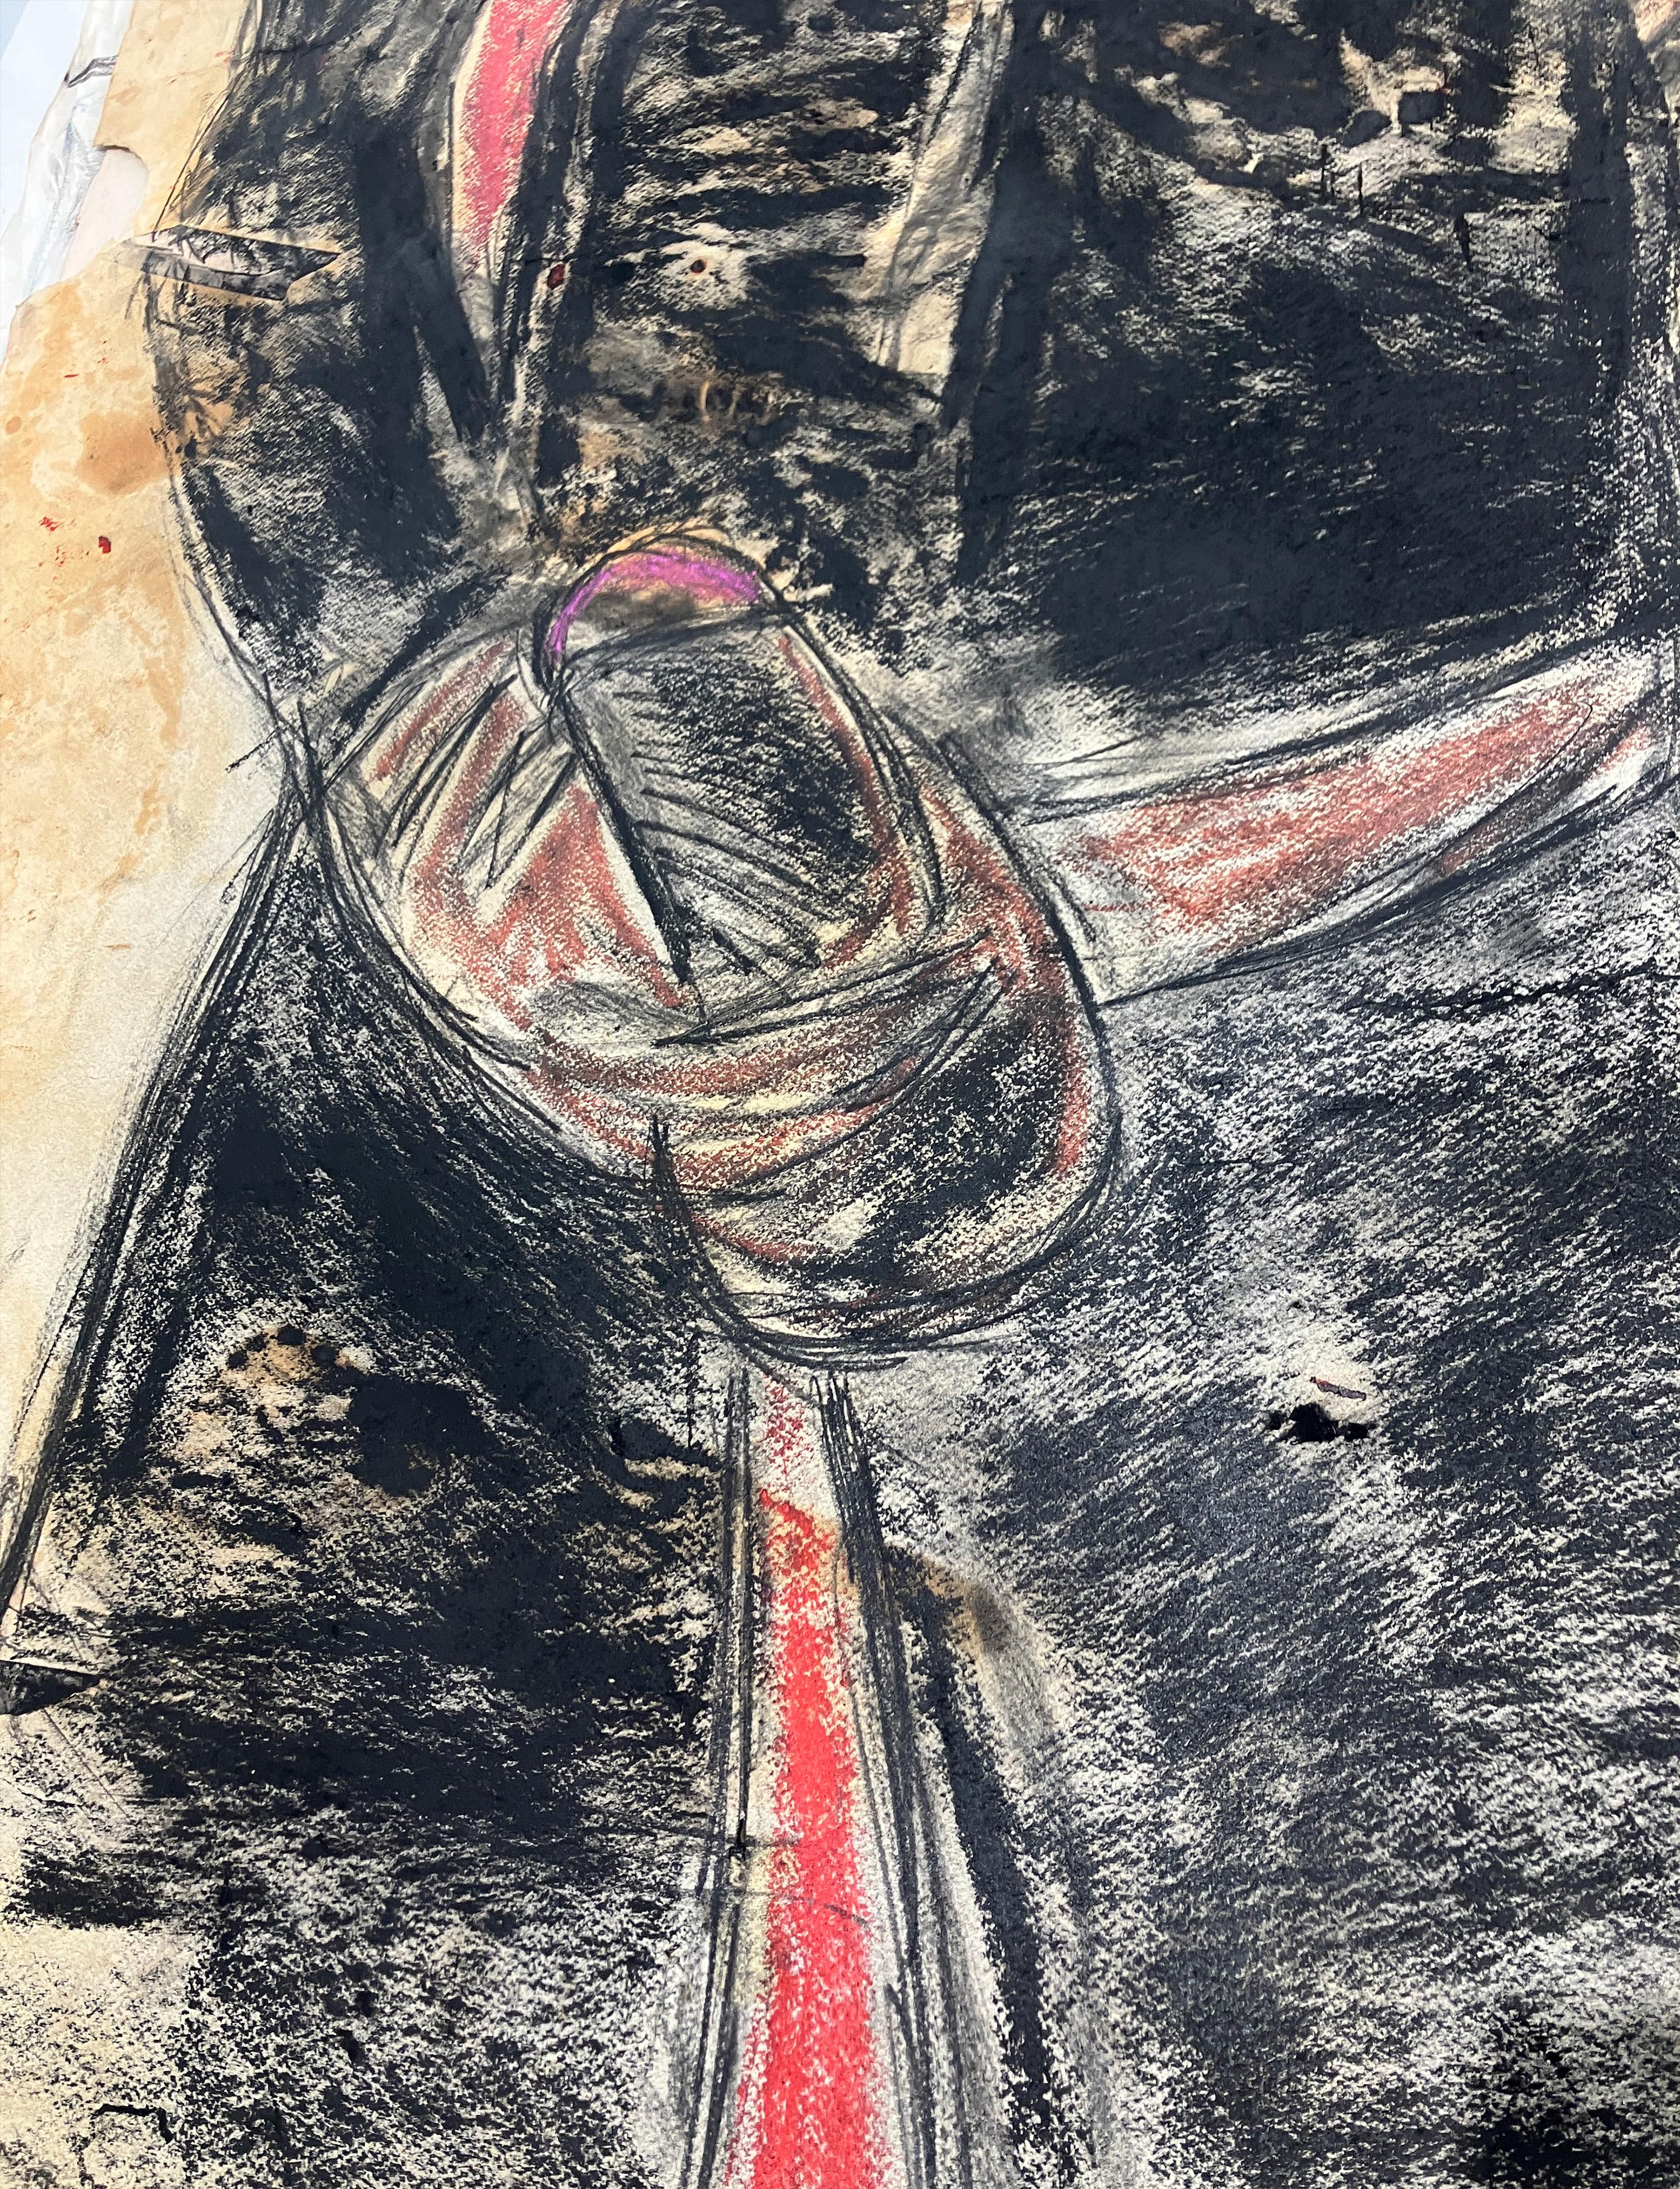 Jose antonio, Martes 7 de julio 2016,  von Celso Castro
Pastellkreide auf Archivpapier
Bildgröße: 60 H. x 38 H. W 
Ungerahmt

Auf der Rückseite des Bildes:
Zusammenfassung, 1986
Bleistift und Pastell auf Archivpapier
Ungerahmt
____________
Die Werke